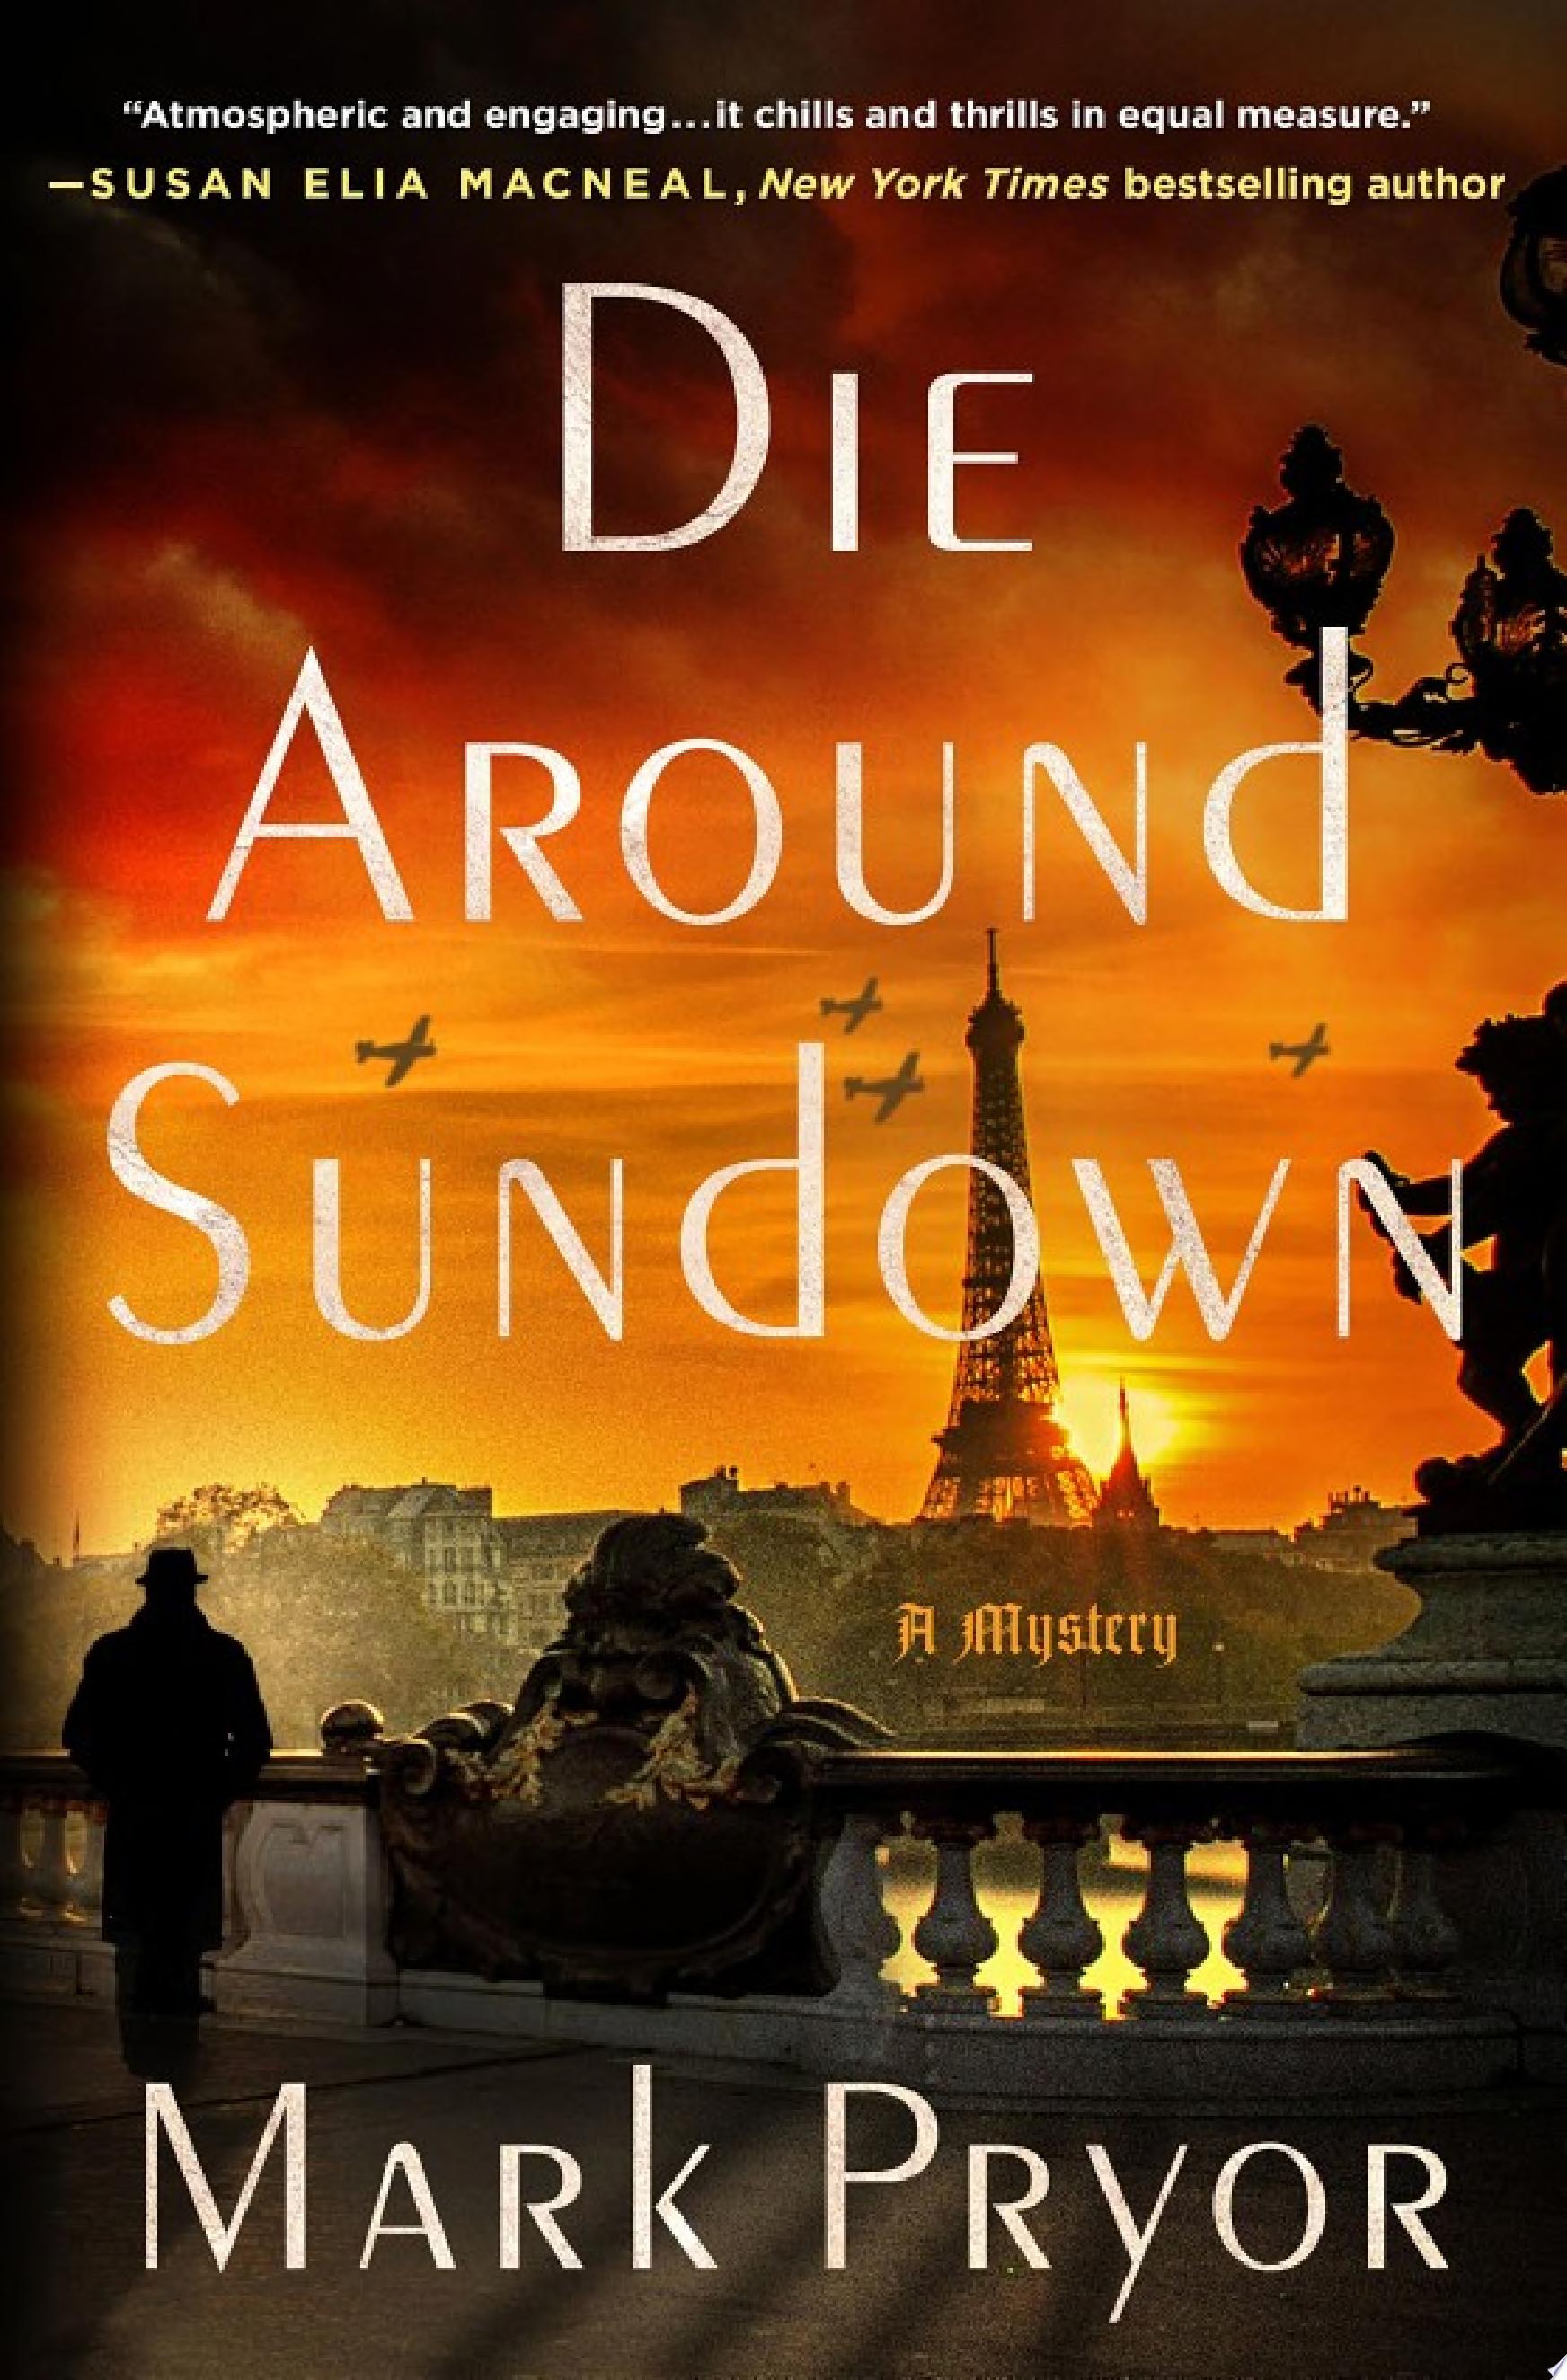 Image for "Die Around Sundown"